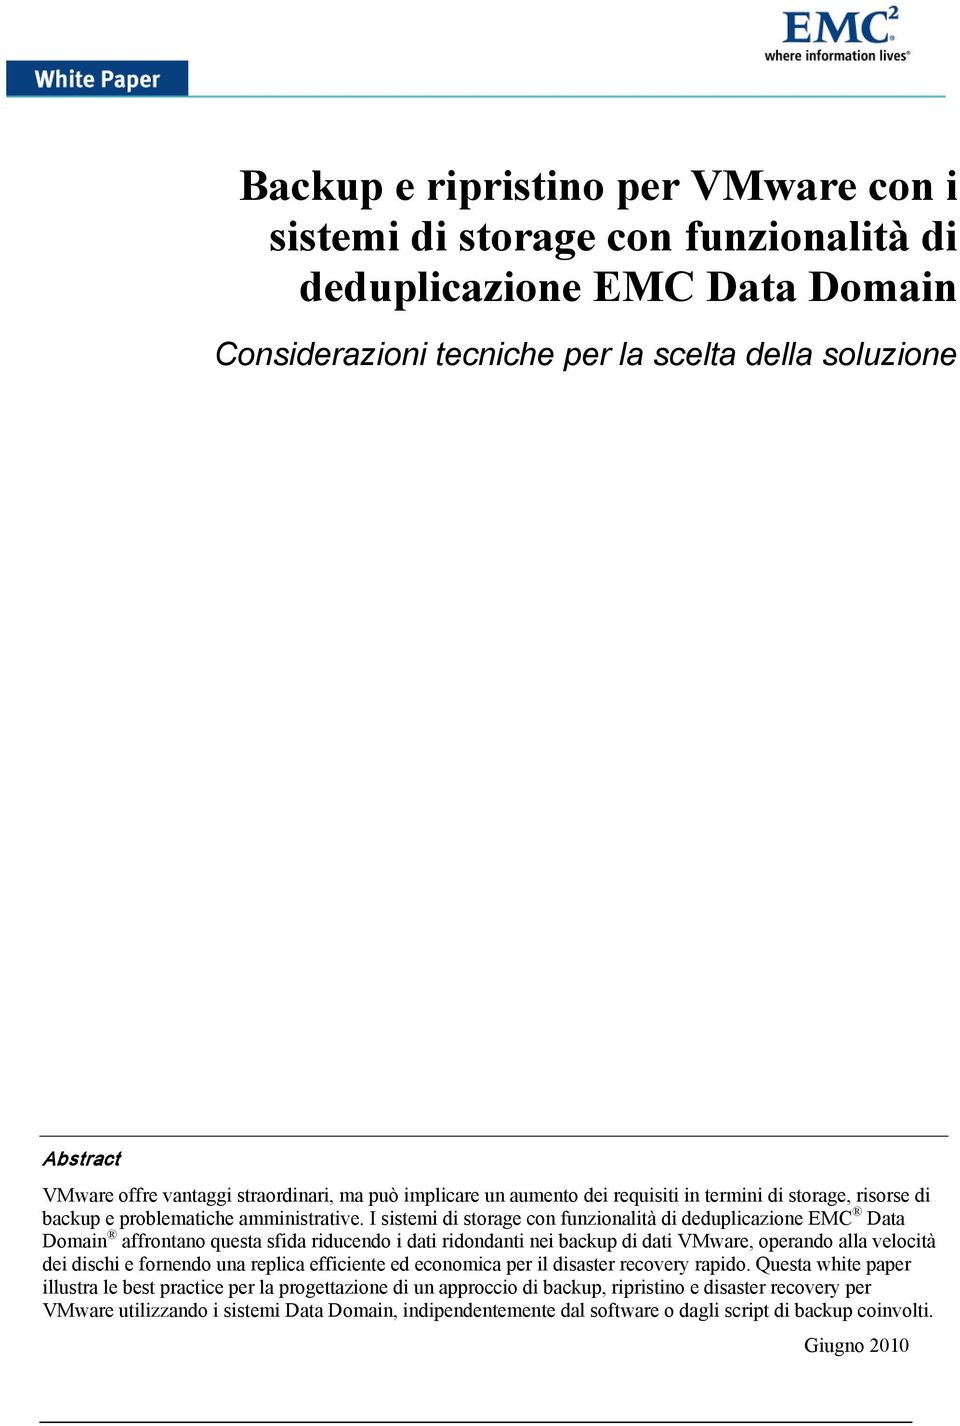 I sistemi di storage con funzionalità di deduplicazione EMC Data Domain affrontano questa sfida riducendo i dati ridondanti nei backup di dati VMware, operando alla velocità dei dischi e fornendo una